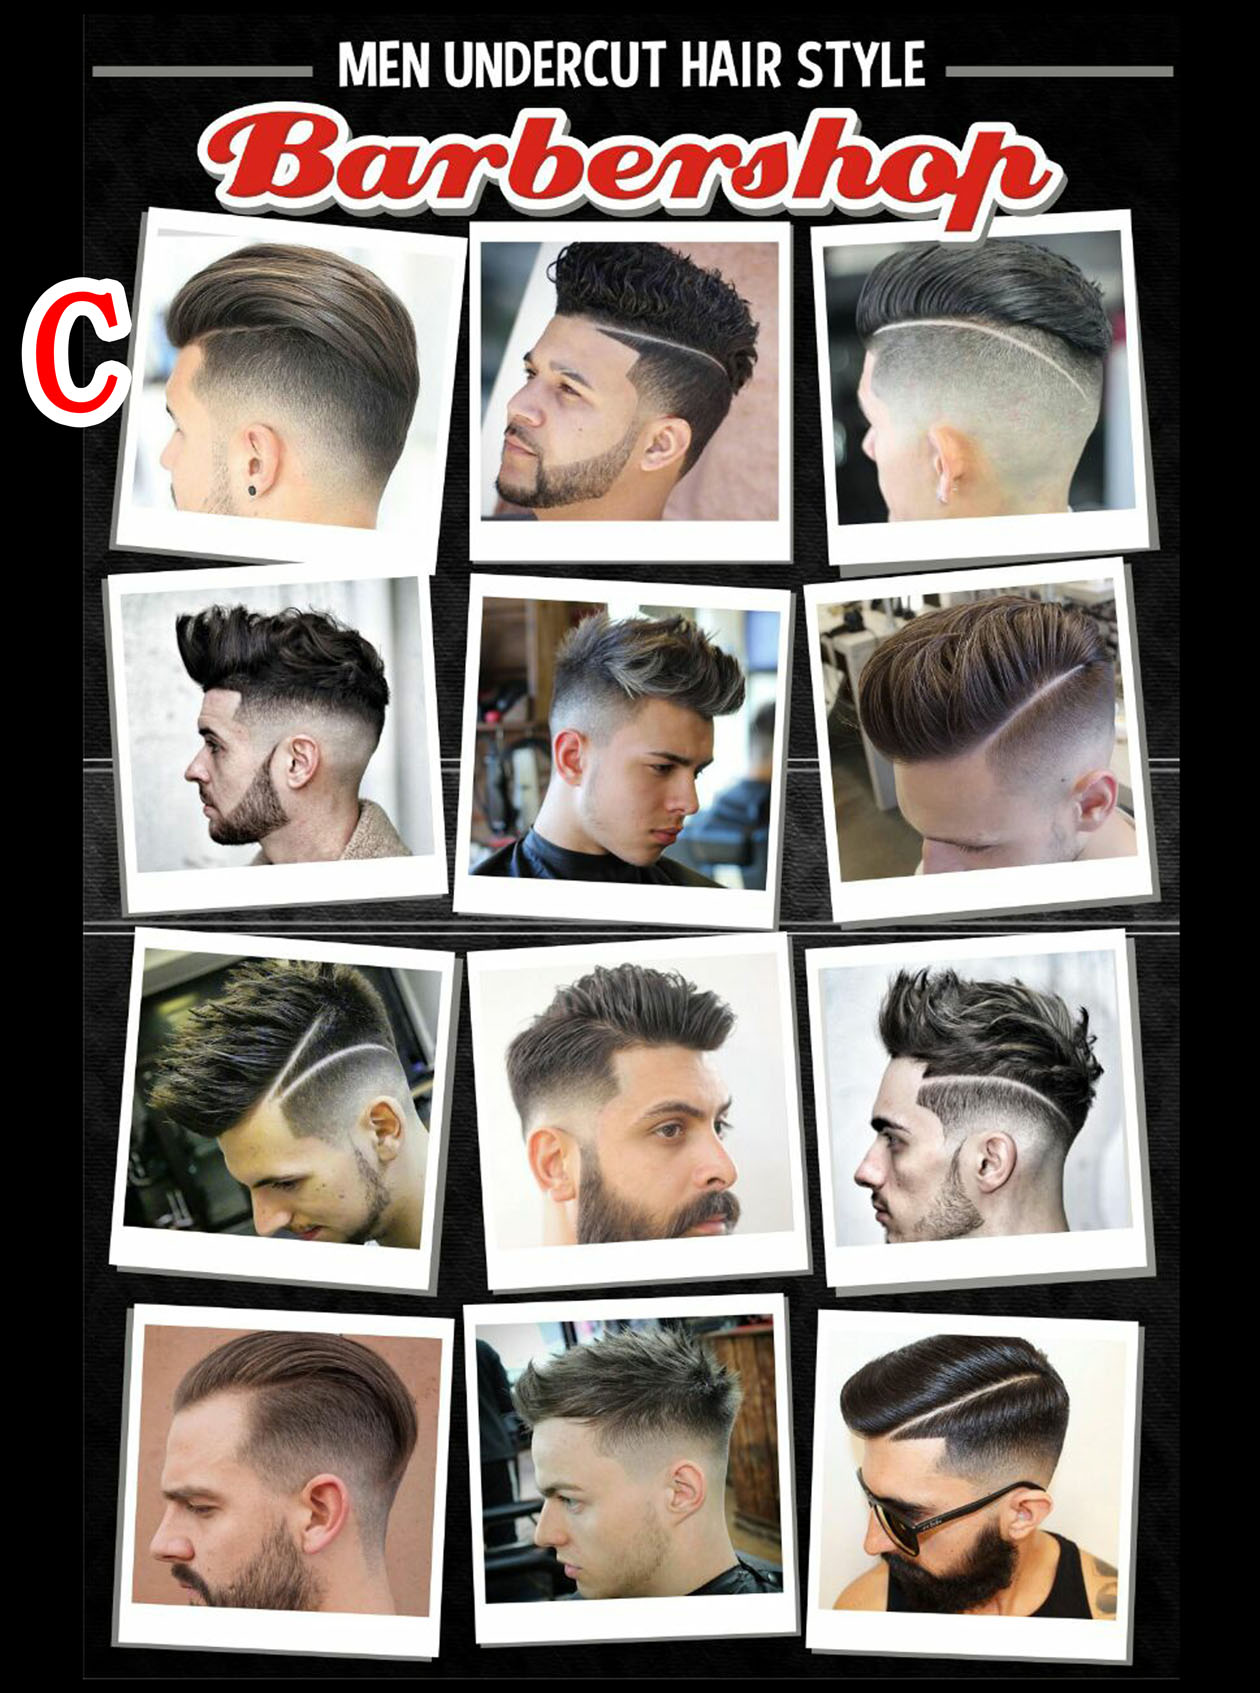 Gambar Potongan Rambut Barbershop - KibrisPDR